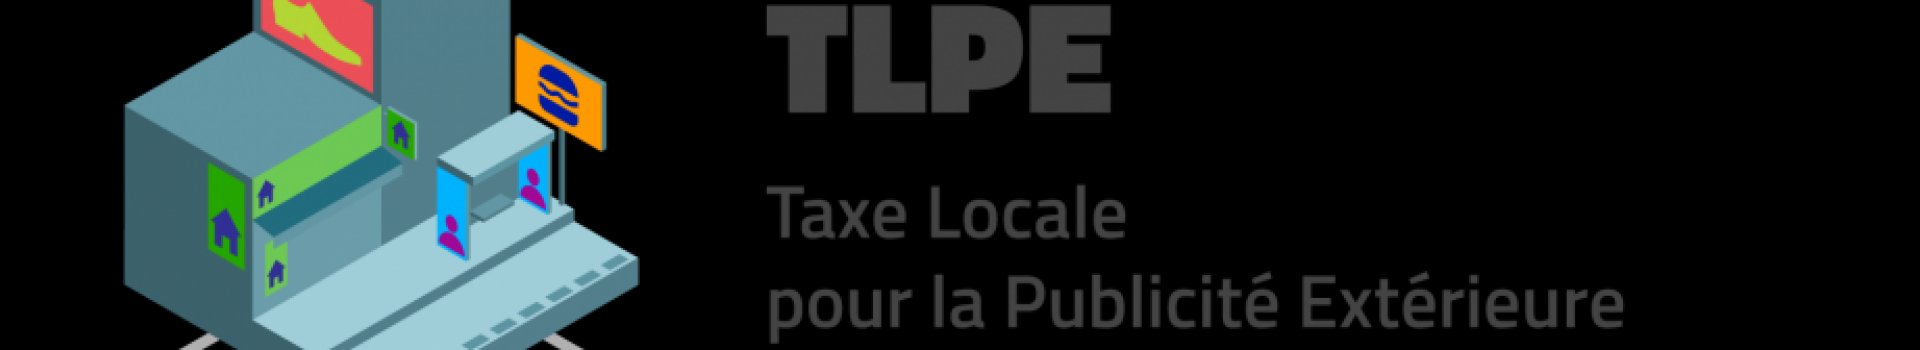 Taxe Locale sur la Publicité Extérieure